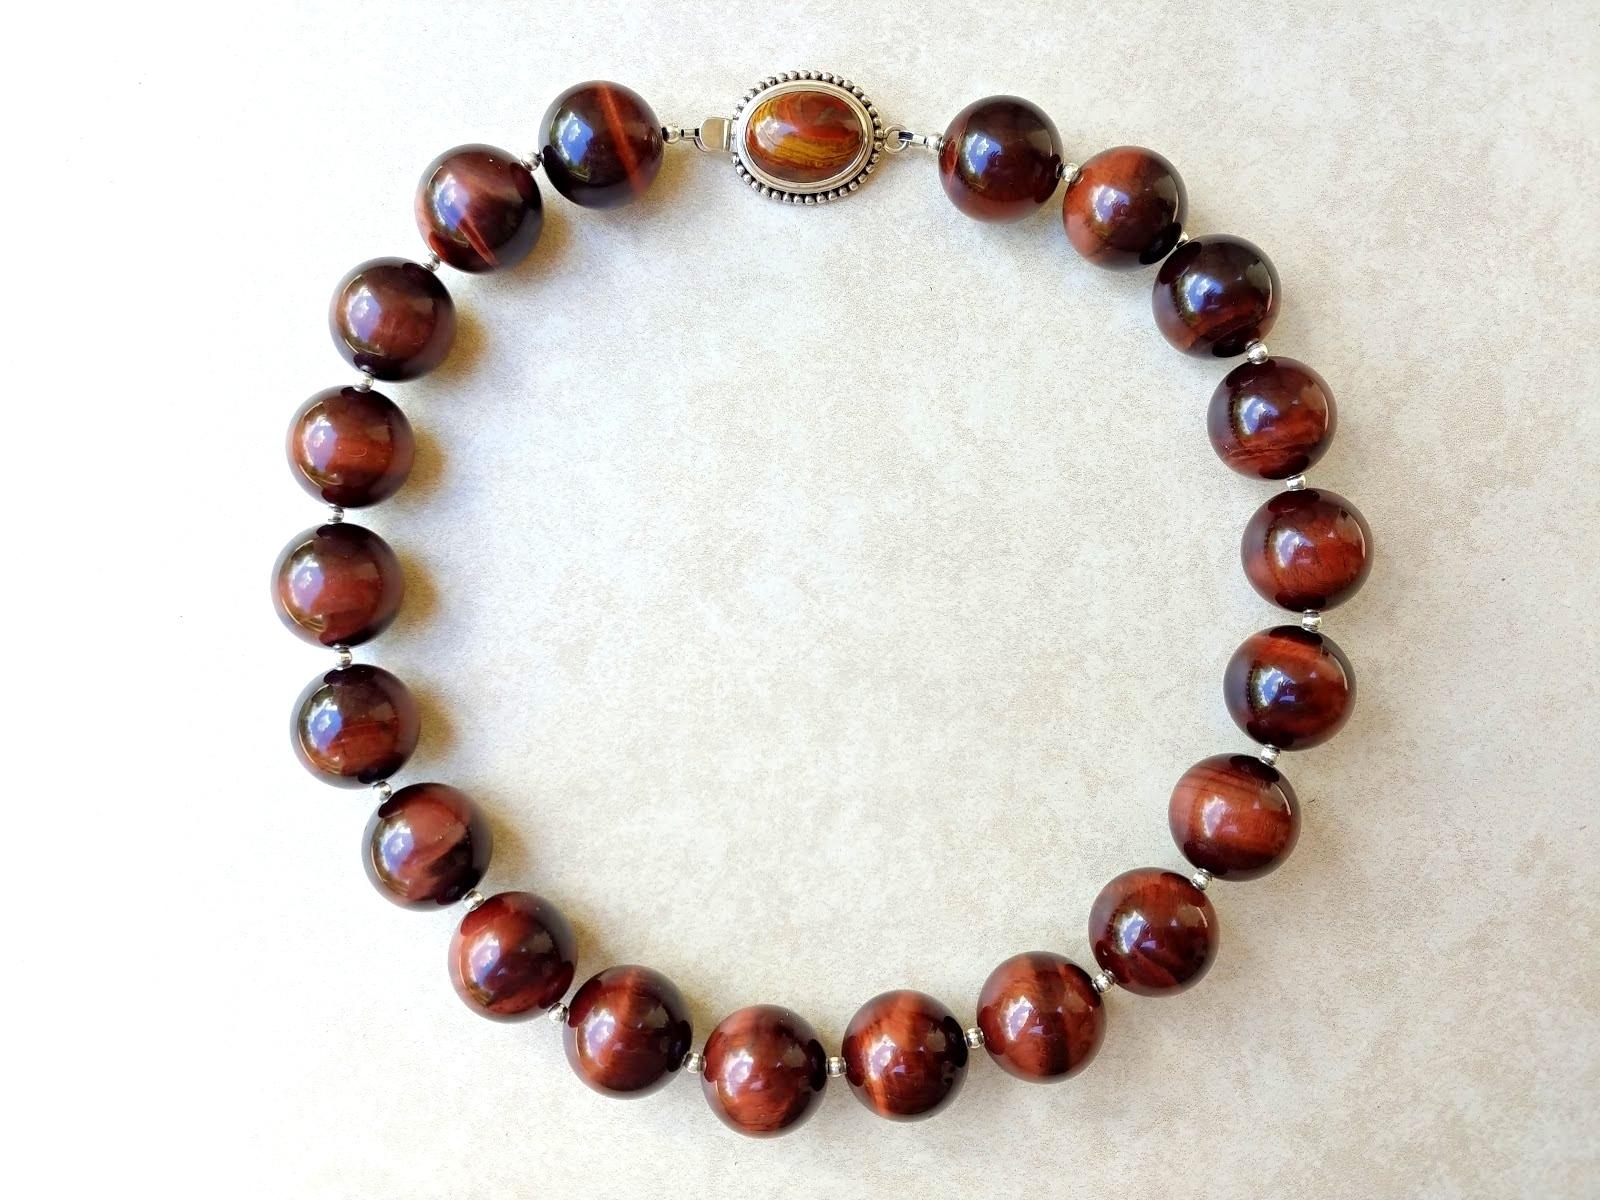 La longueur du collier est de 18,5 pouces (47 cm). La taille des perles rondes lisses est de 20 mm. Les perles sont de très haute qualité.
Les tons des perles sont d'un merveilleux rouge chocolat soyeux, luxueux - une magnifique et chaude nuance